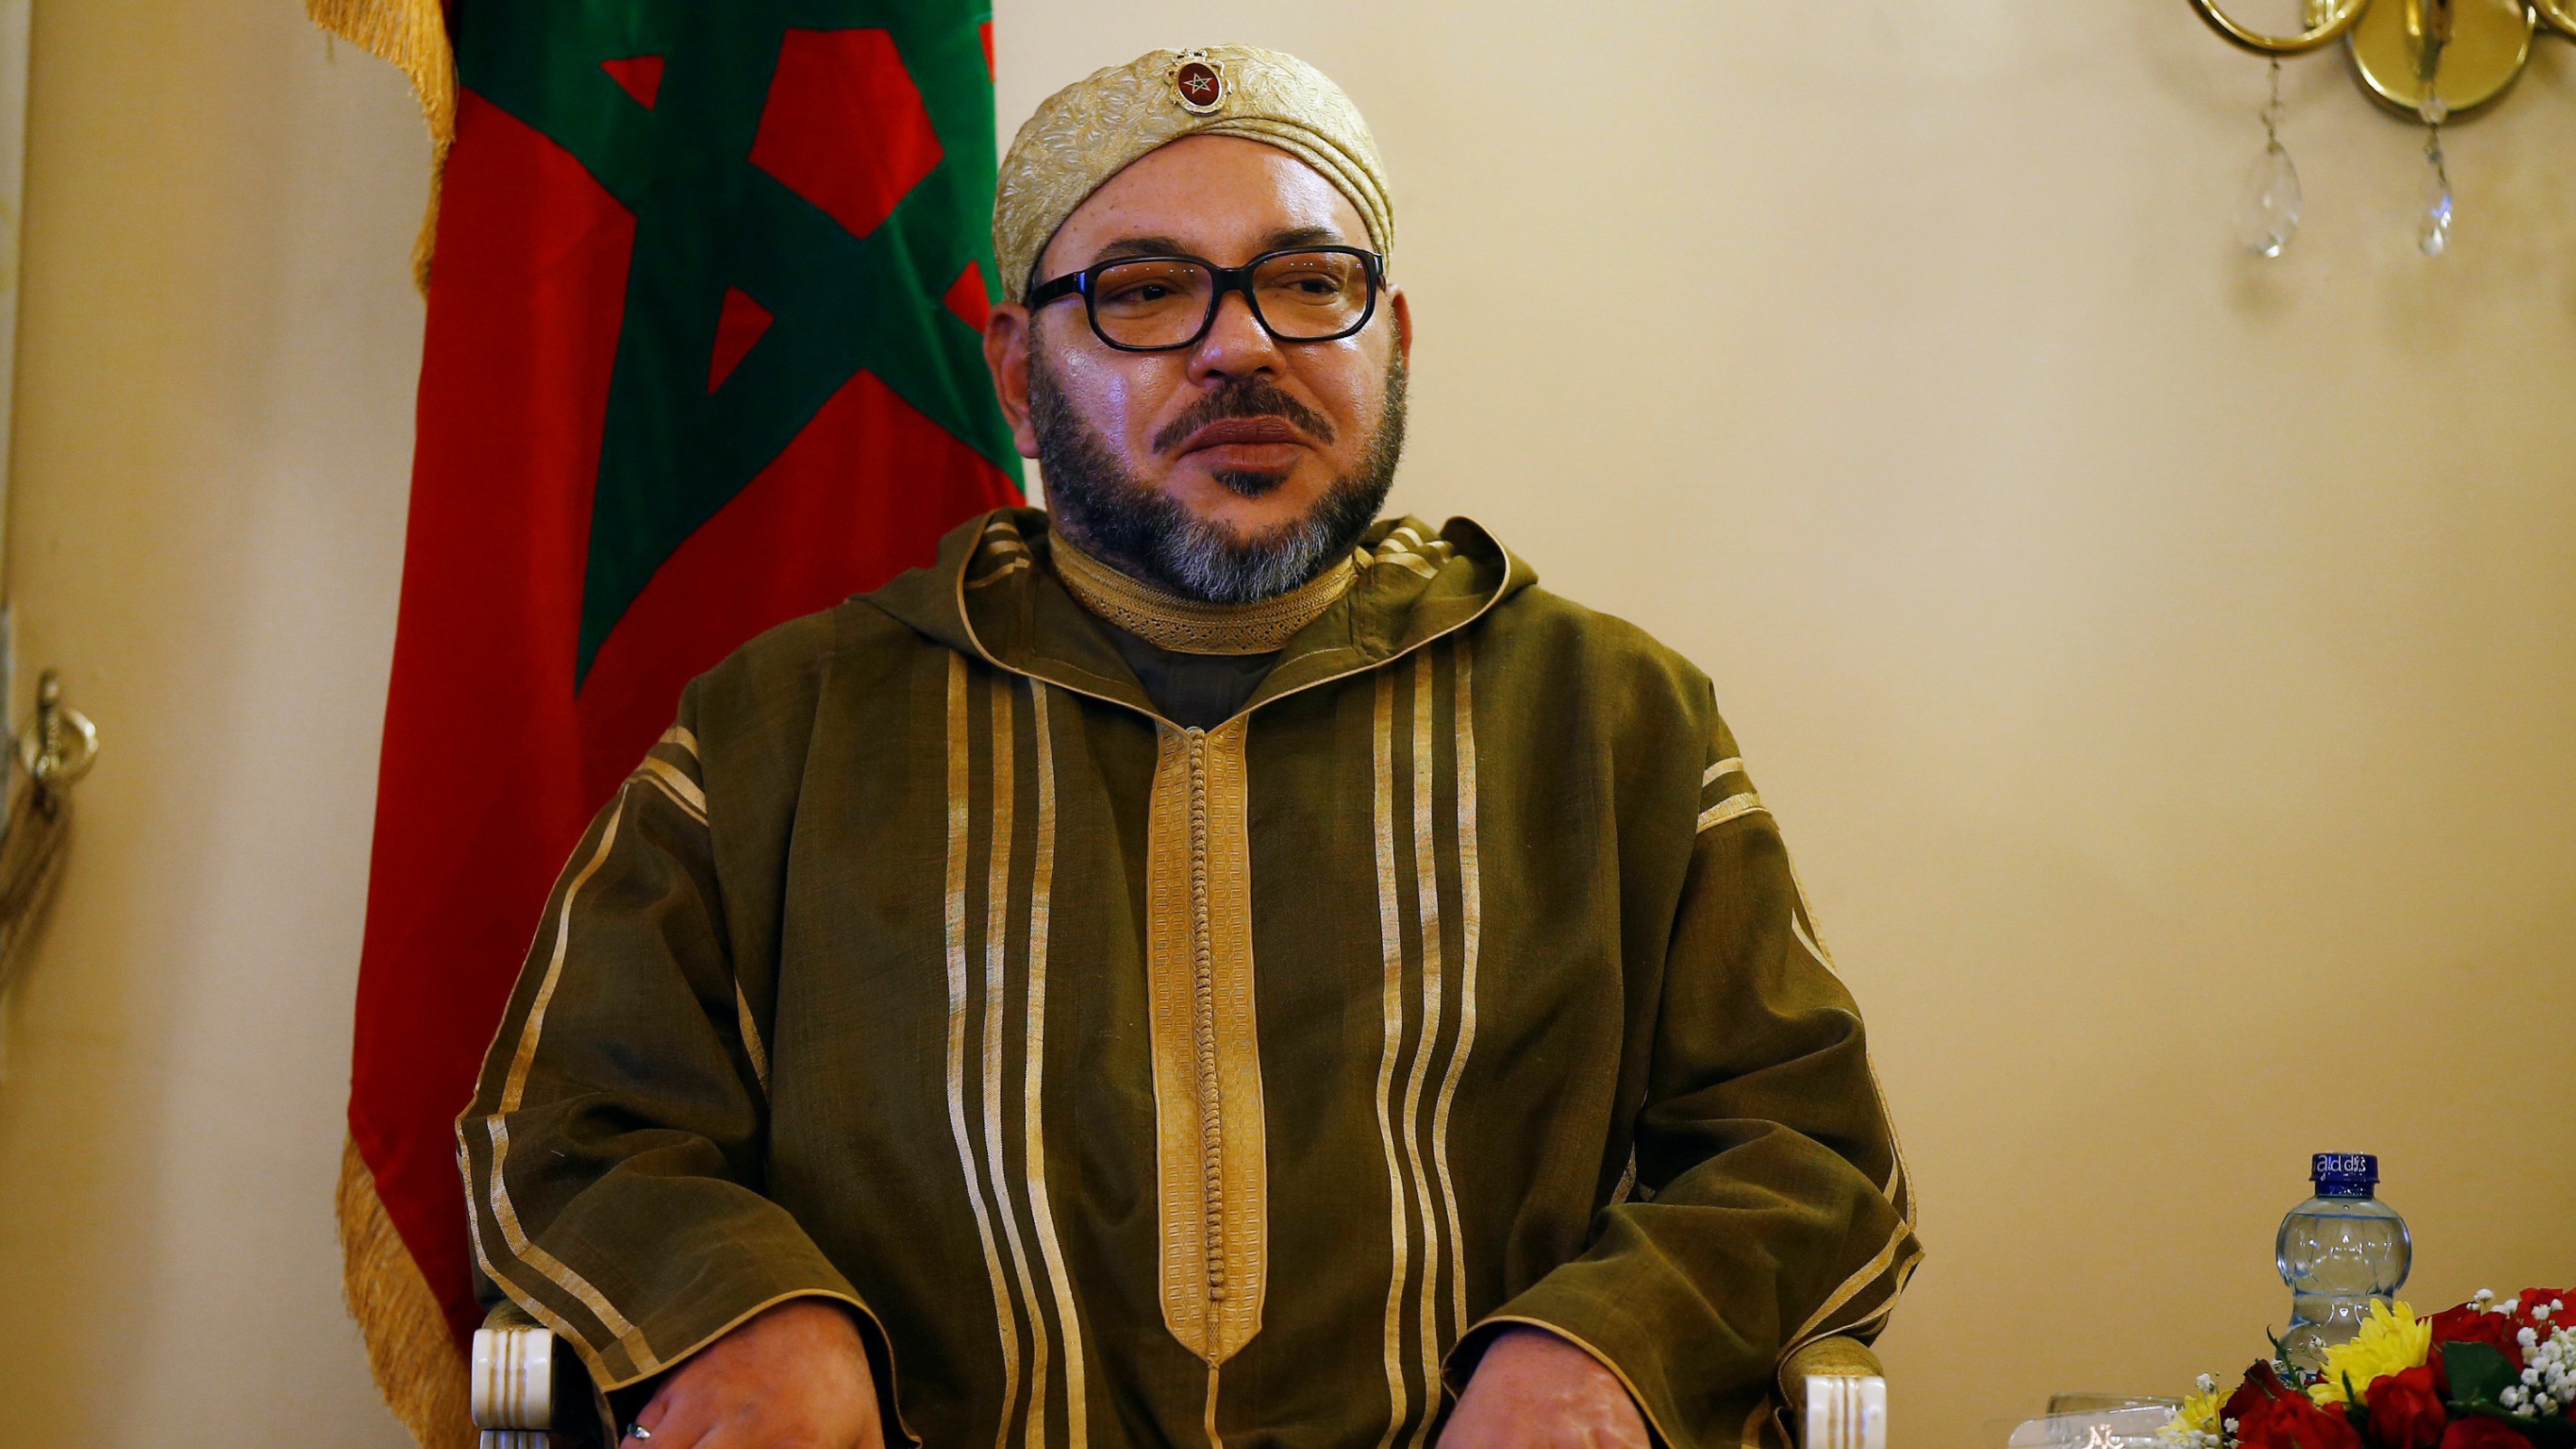 Maroc : une université inaugure une synagogue sur son campus, grande première dans le monde musulman